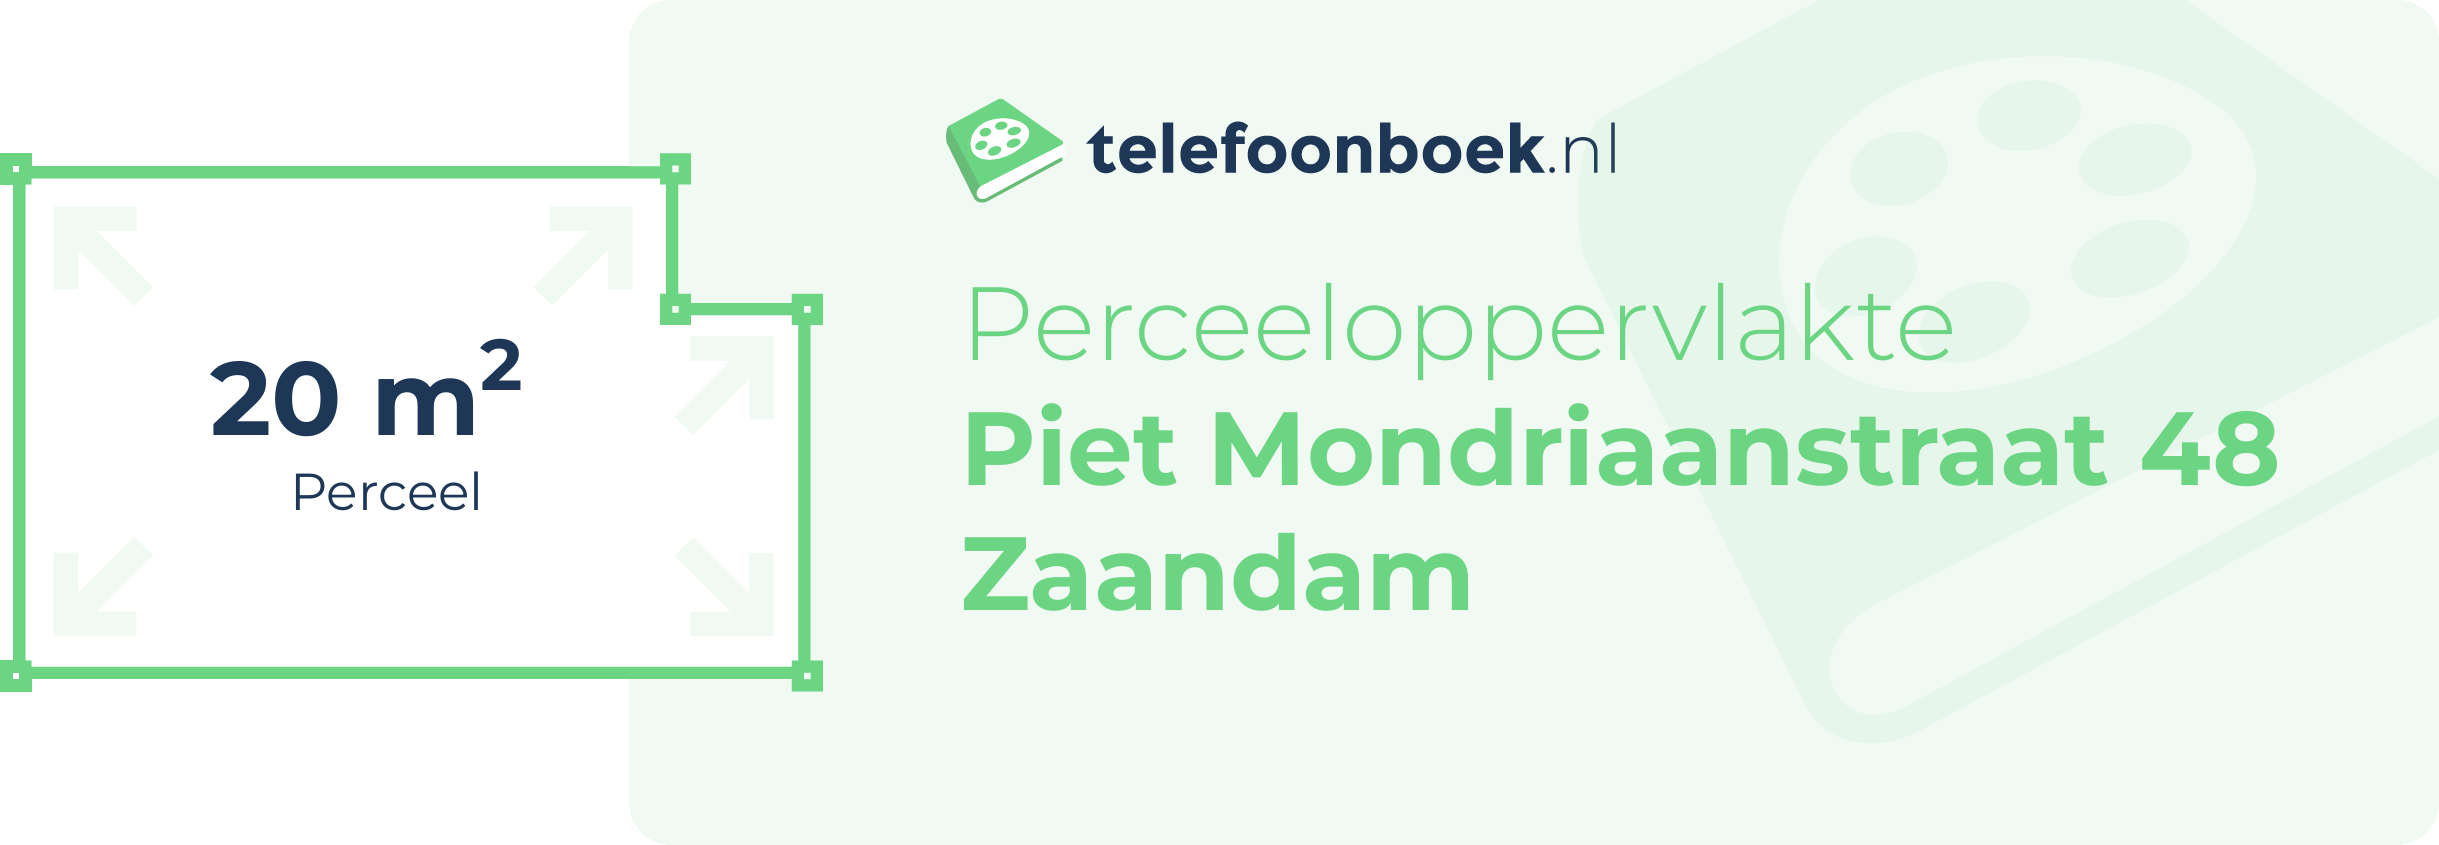 Perceeloppervlakte Piet Mondriaanstraat 48 Zaandam